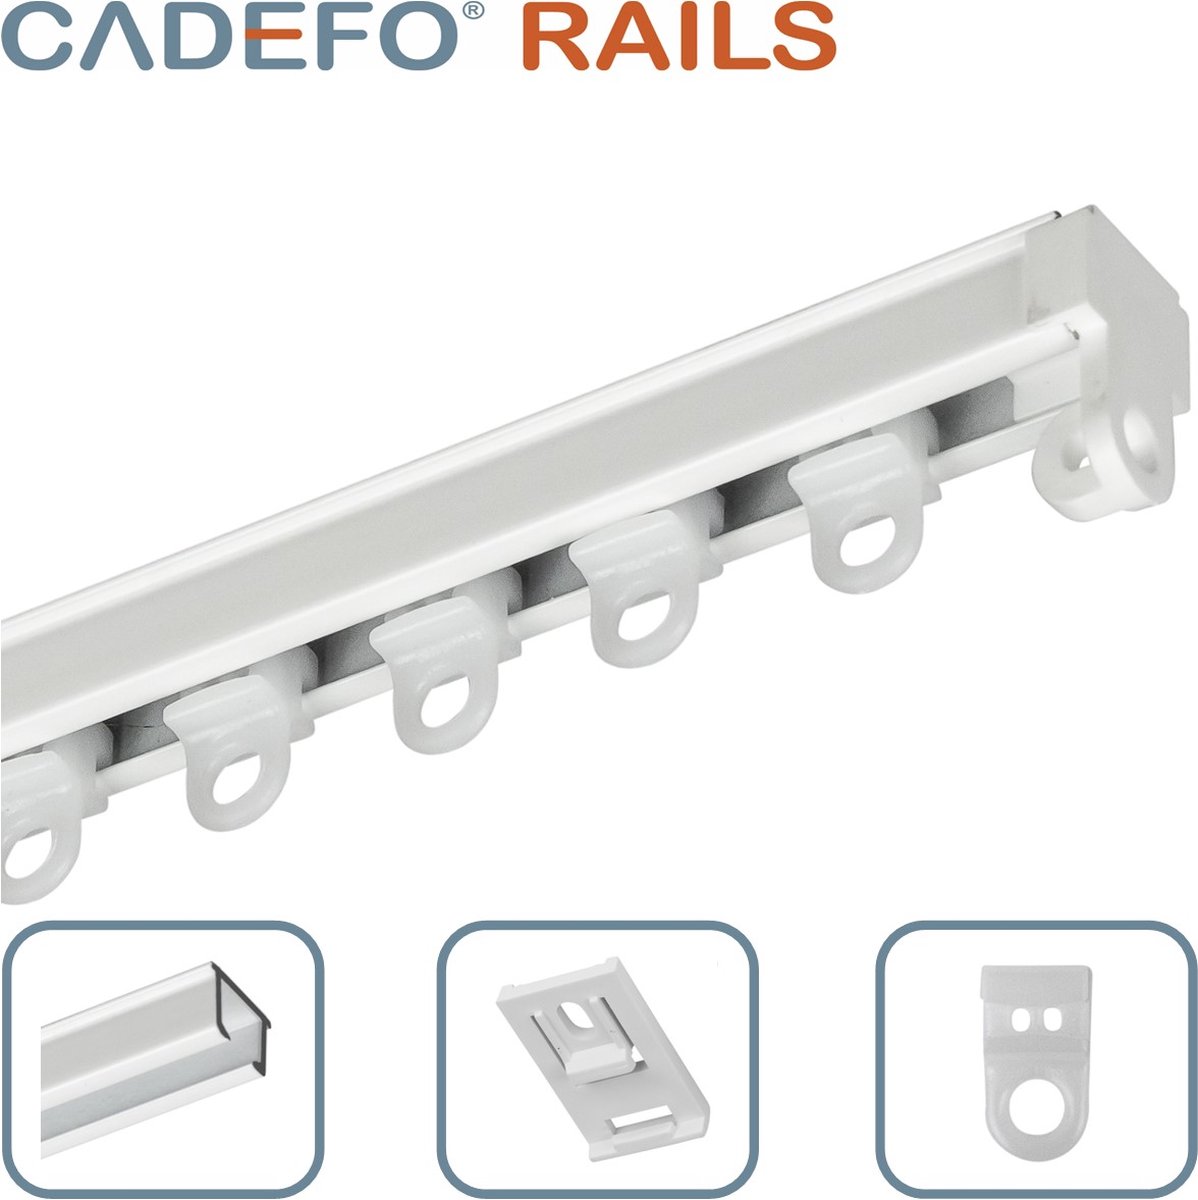 CADEFO RAILS (501 - 550 cm) Gordijnrails - Compleet op maat! - UIT 1 STUK - Leverbaar tot 6 meter - Plafondbevestiging - Lengte 533 cm